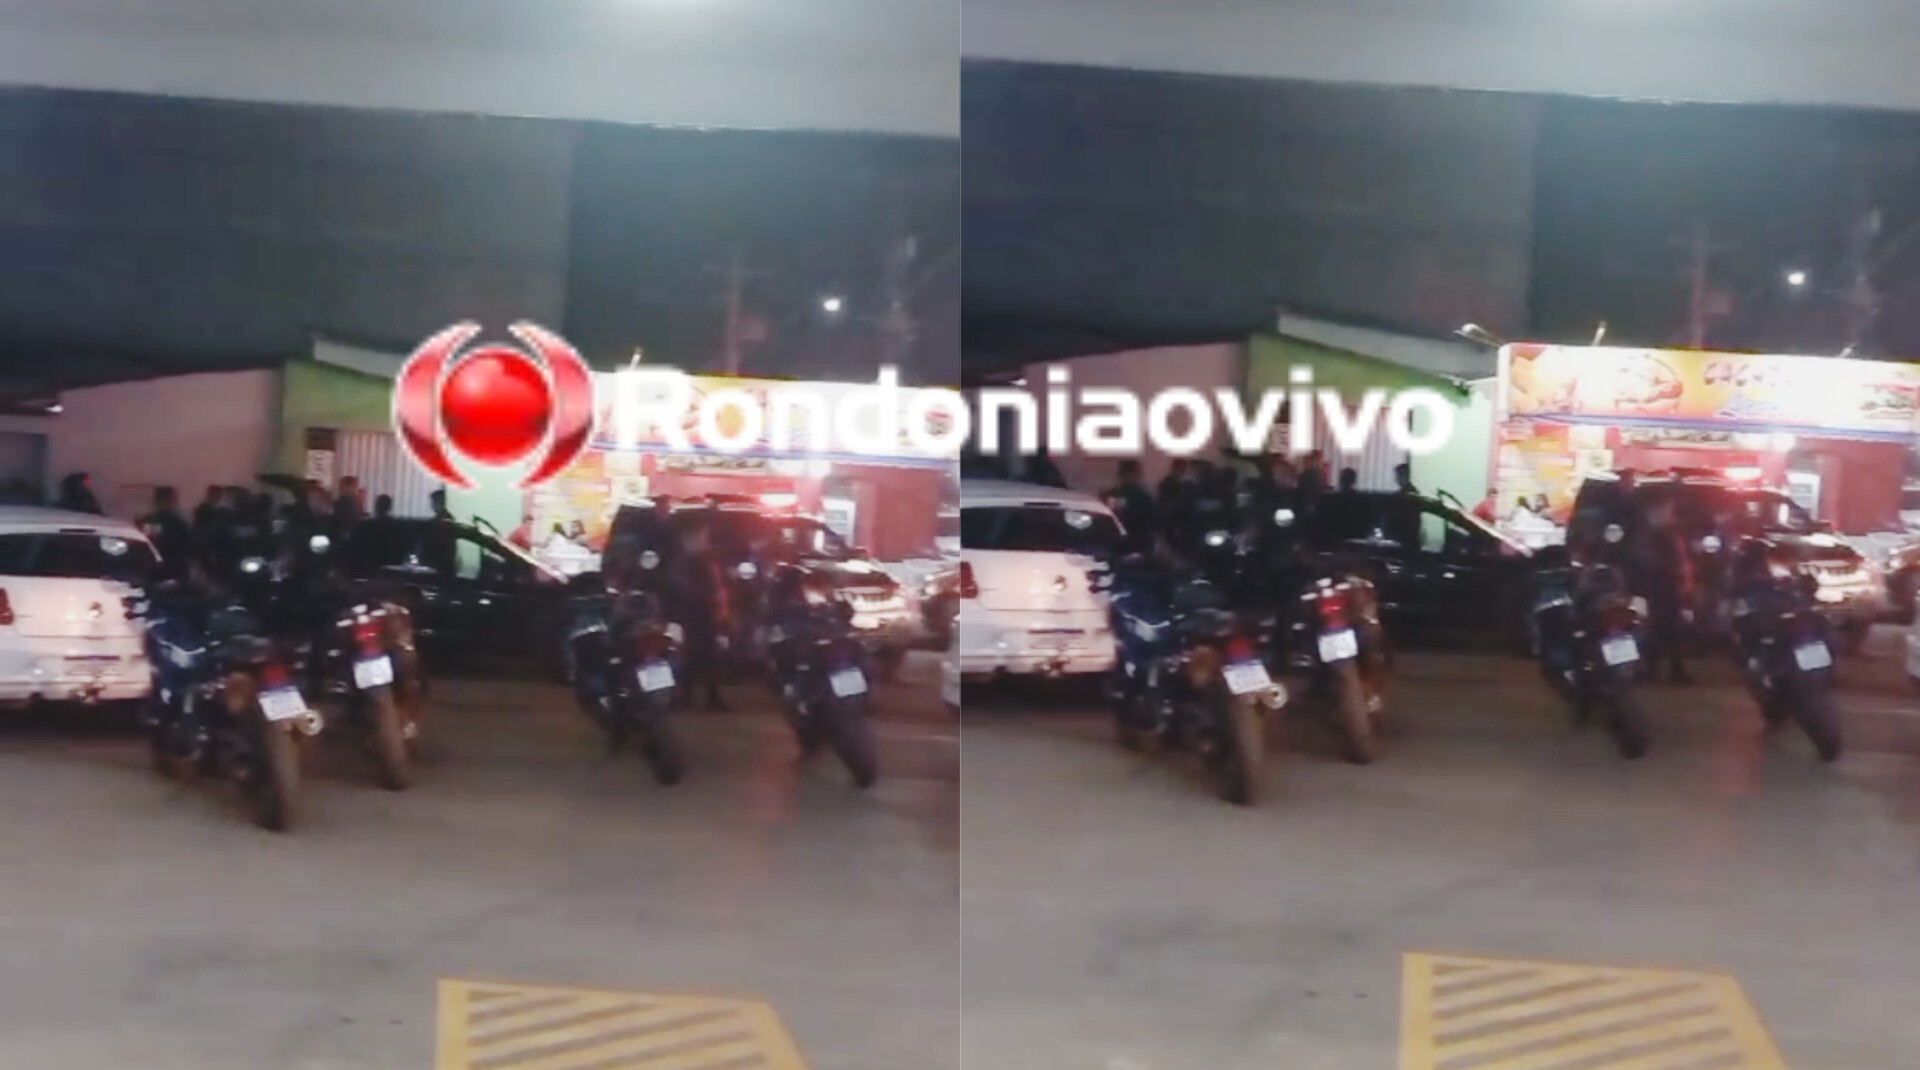 FUGA ALUCINADA: Motorista de App é preso após roubo a residência e perseguição policial 